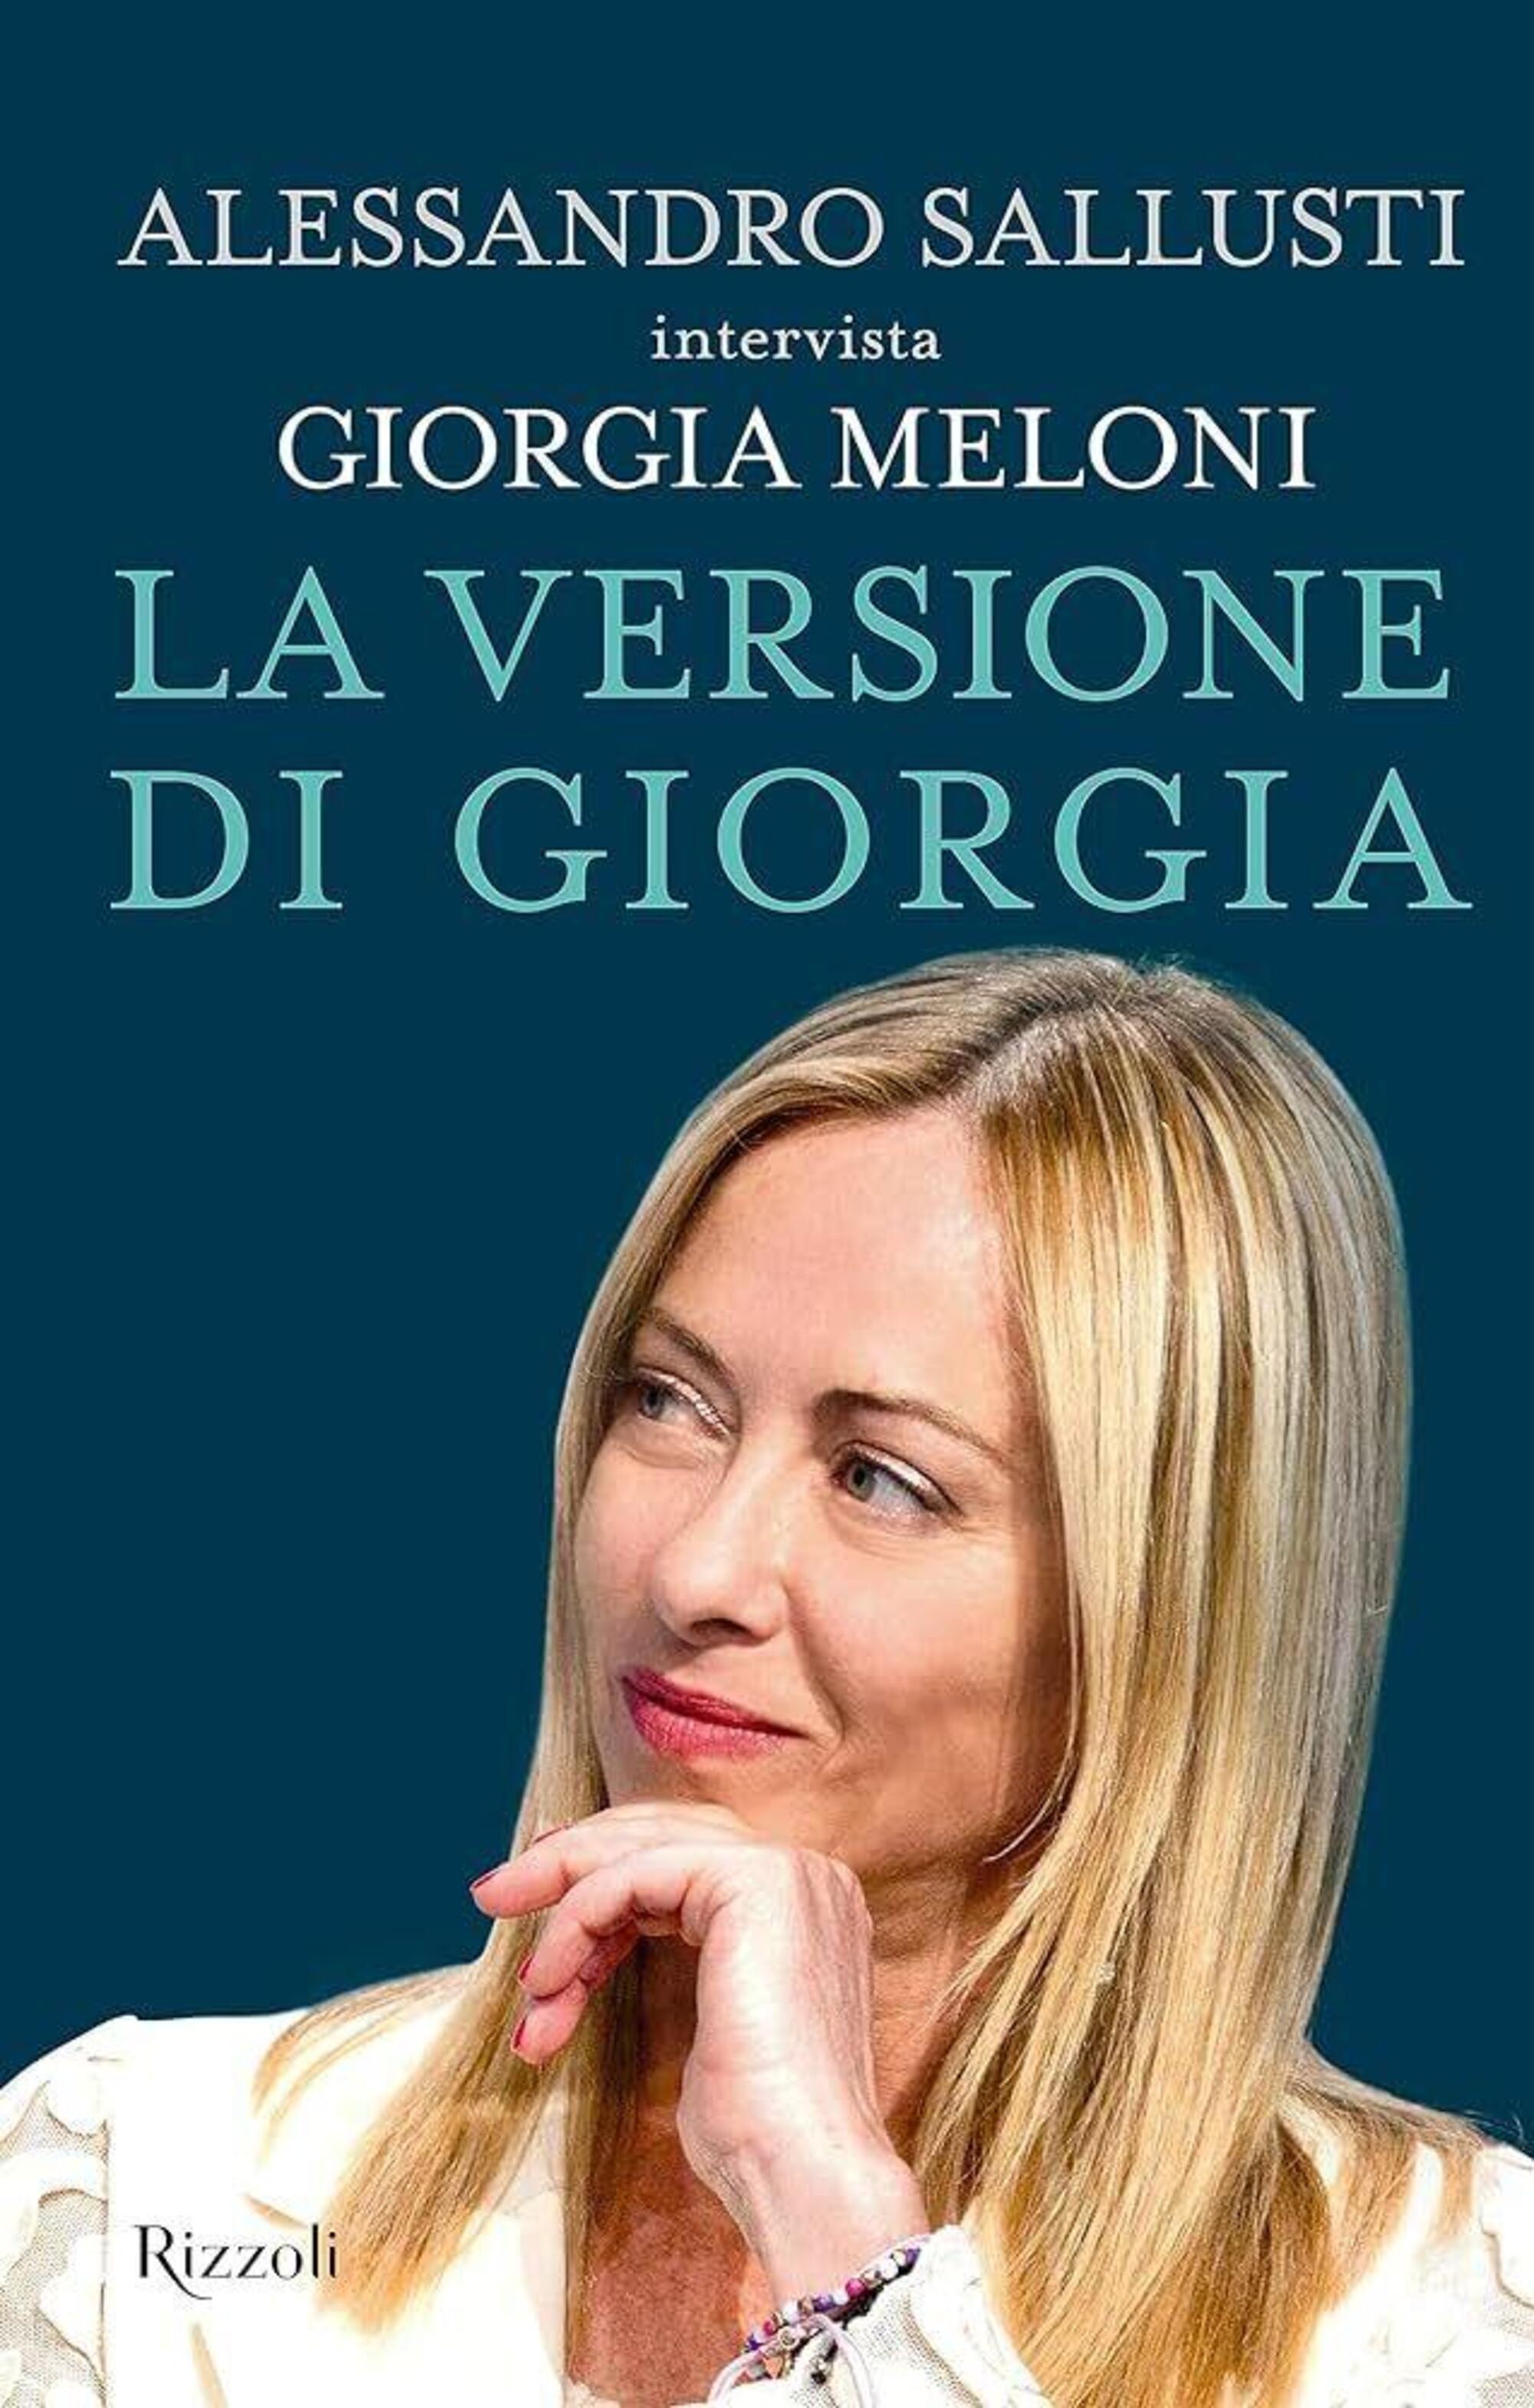 Il libro intervista di Alessandro Sallusti e Giorgia Meloni